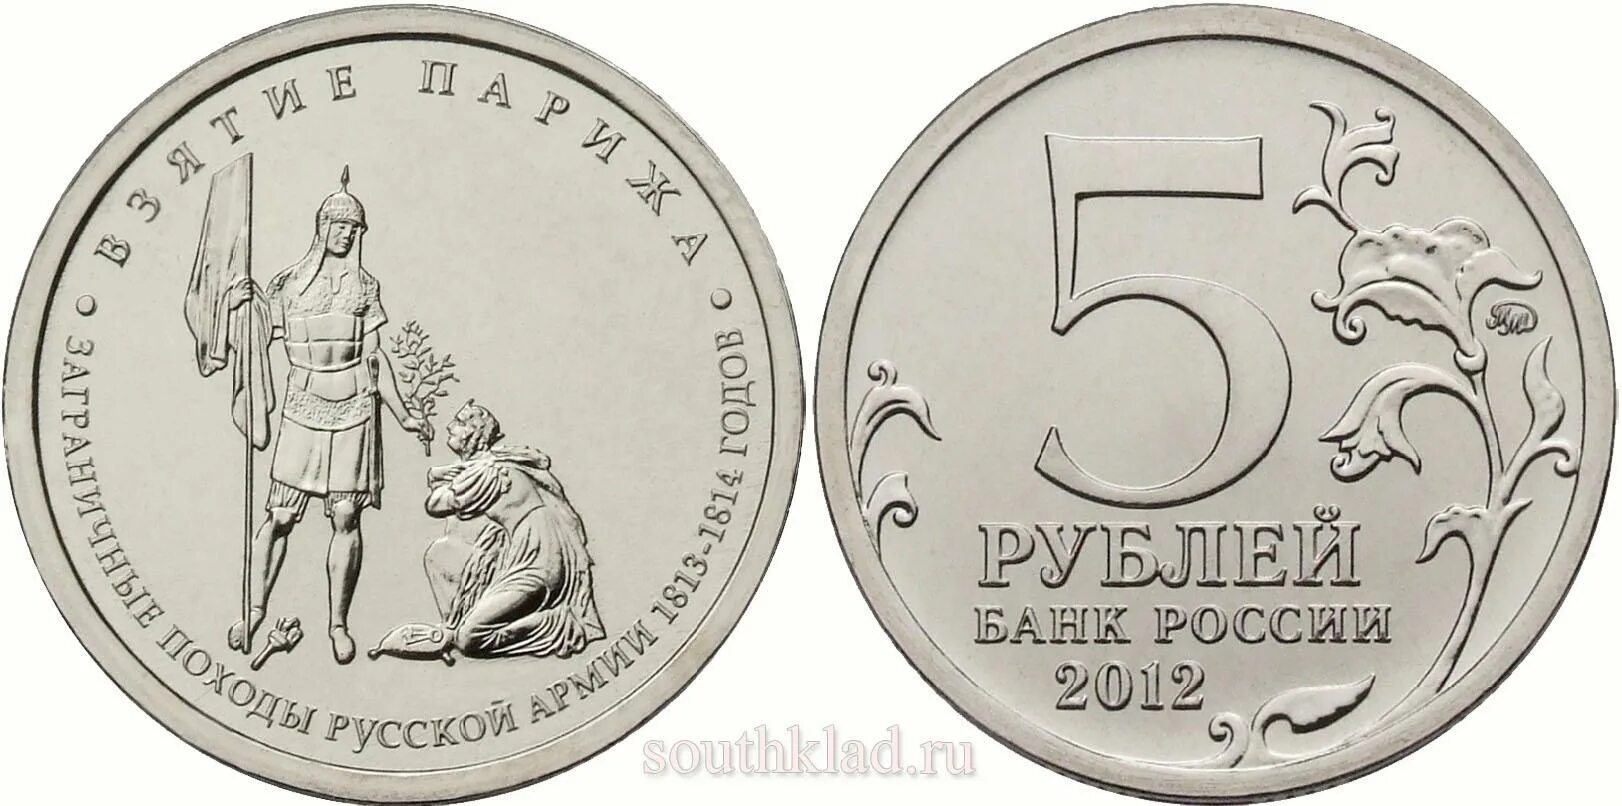 Монета 5 рублей взятие Парижа. 5 Рублевая монета 2012 года взятия Парижа. Монета взятие Парижа. 5 рублей взятие парижа